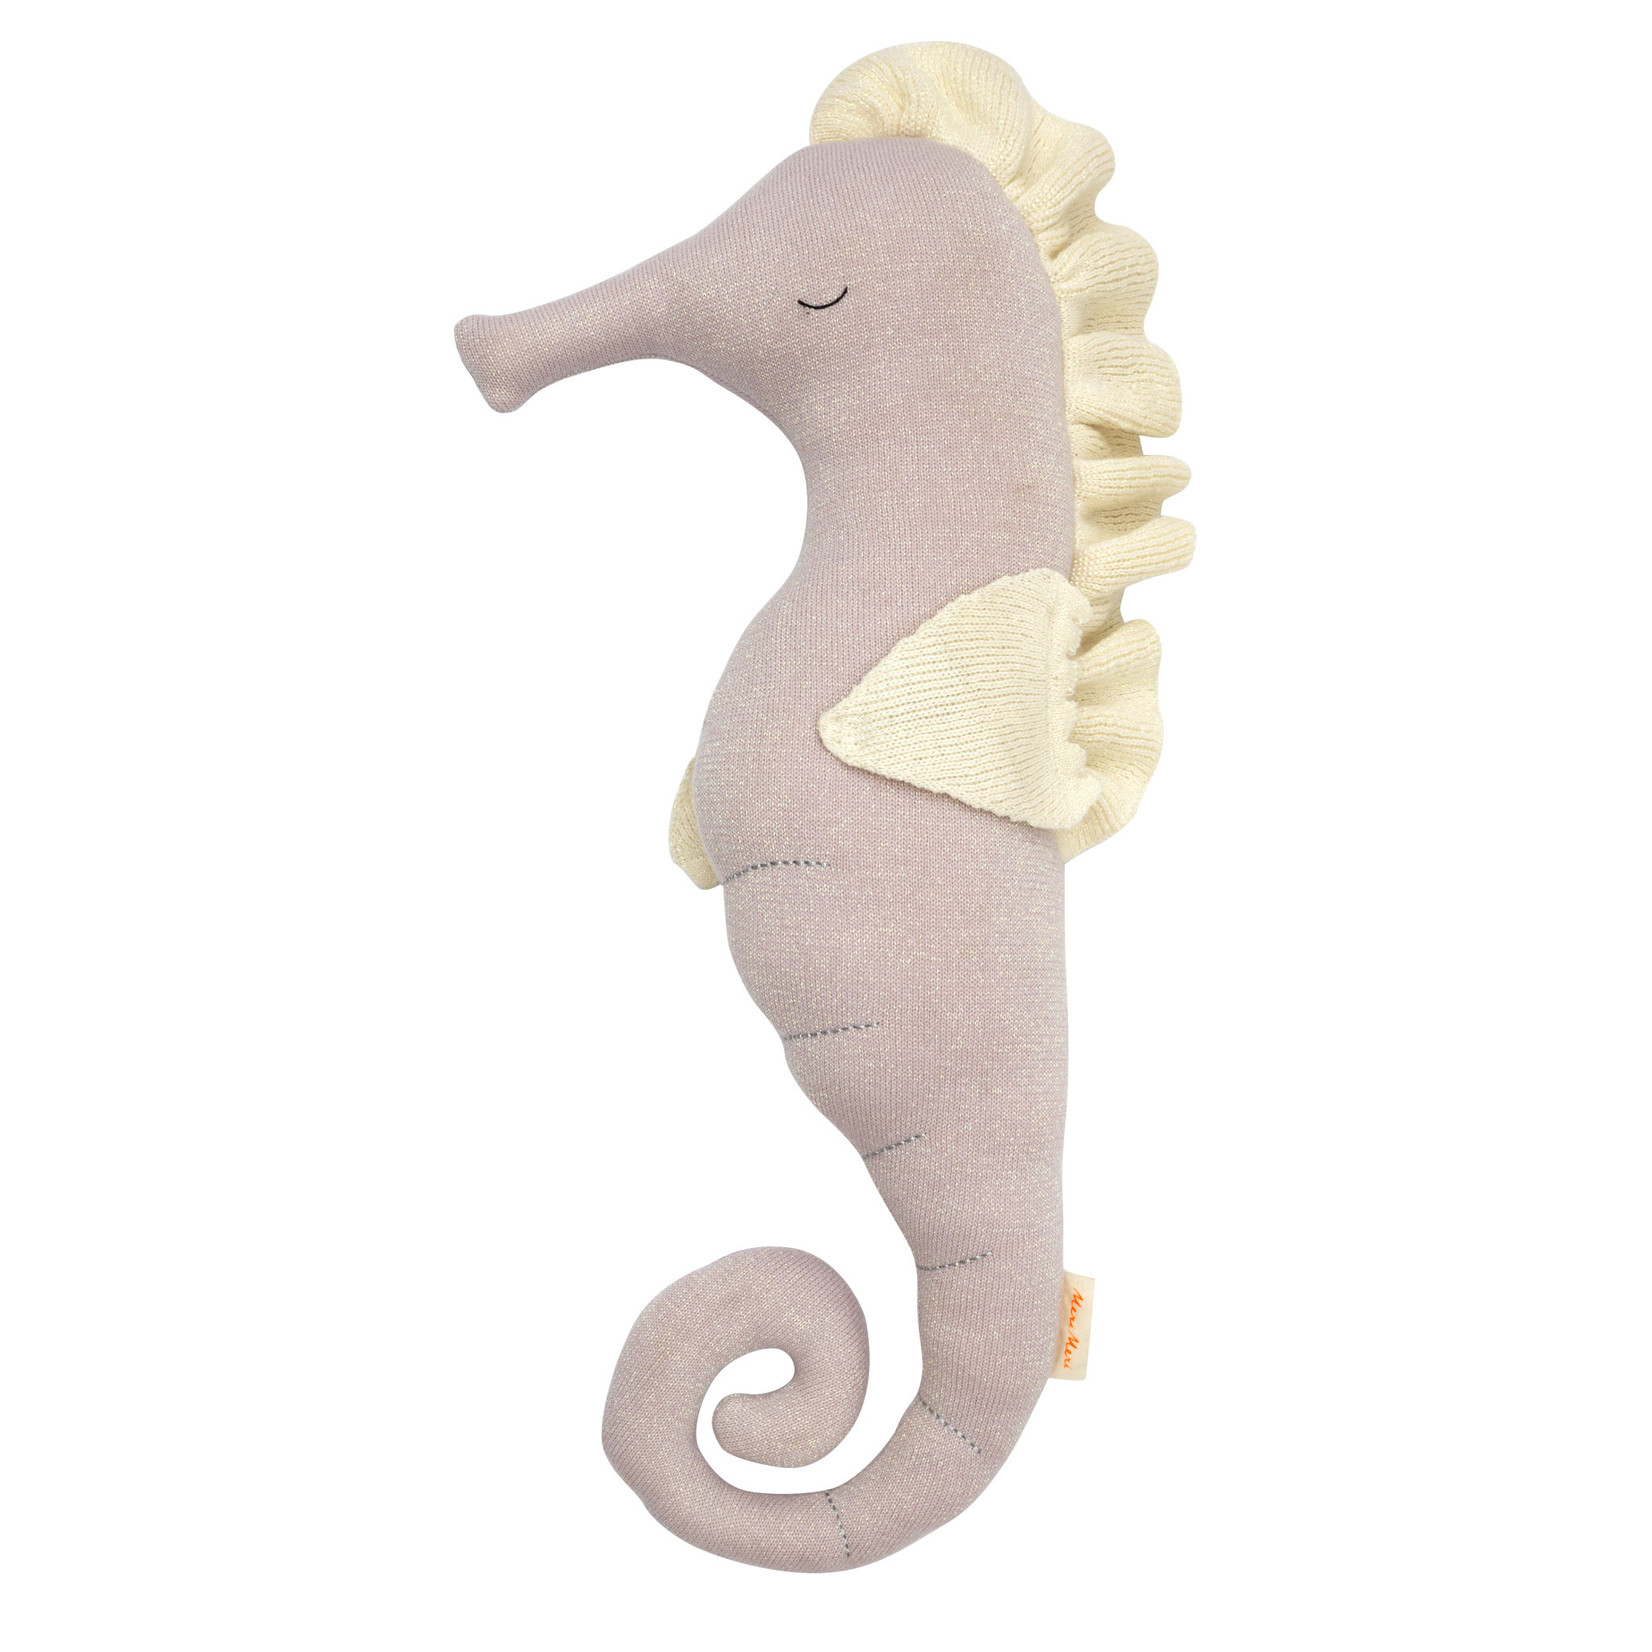 Meri Meri Bianca Seahorse Large Toy